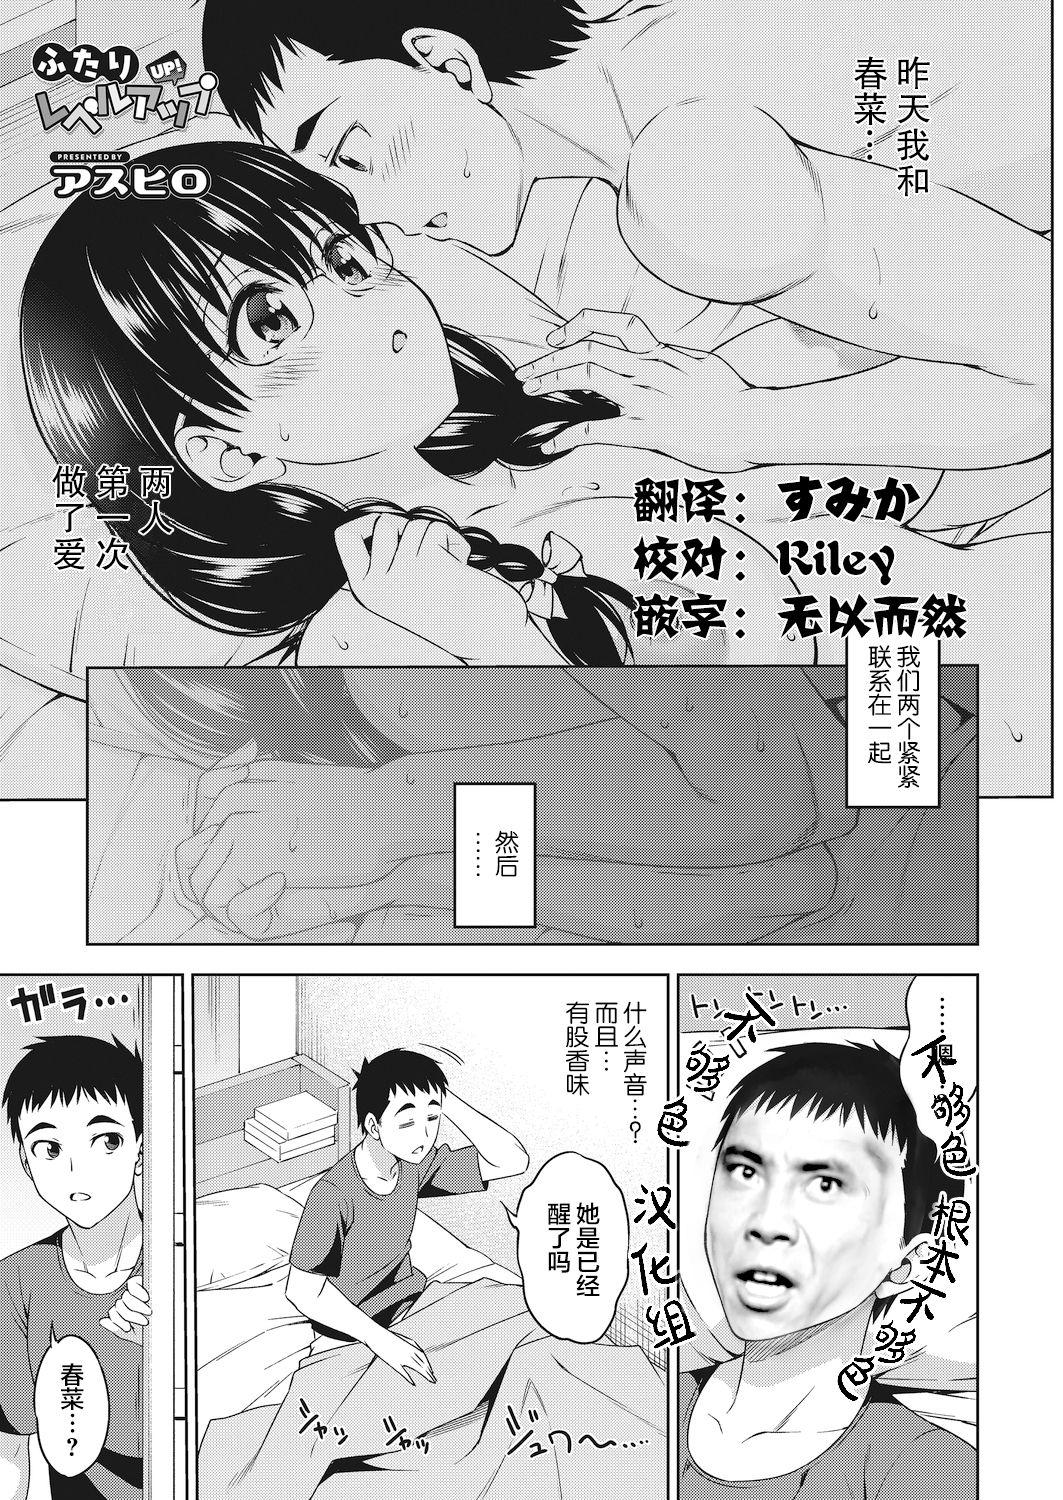 Hai cấp độ lên Ashiro (Comic Hot Milk 2021) Phiên bản DL phiên bản Trung Quốc (23 trang)